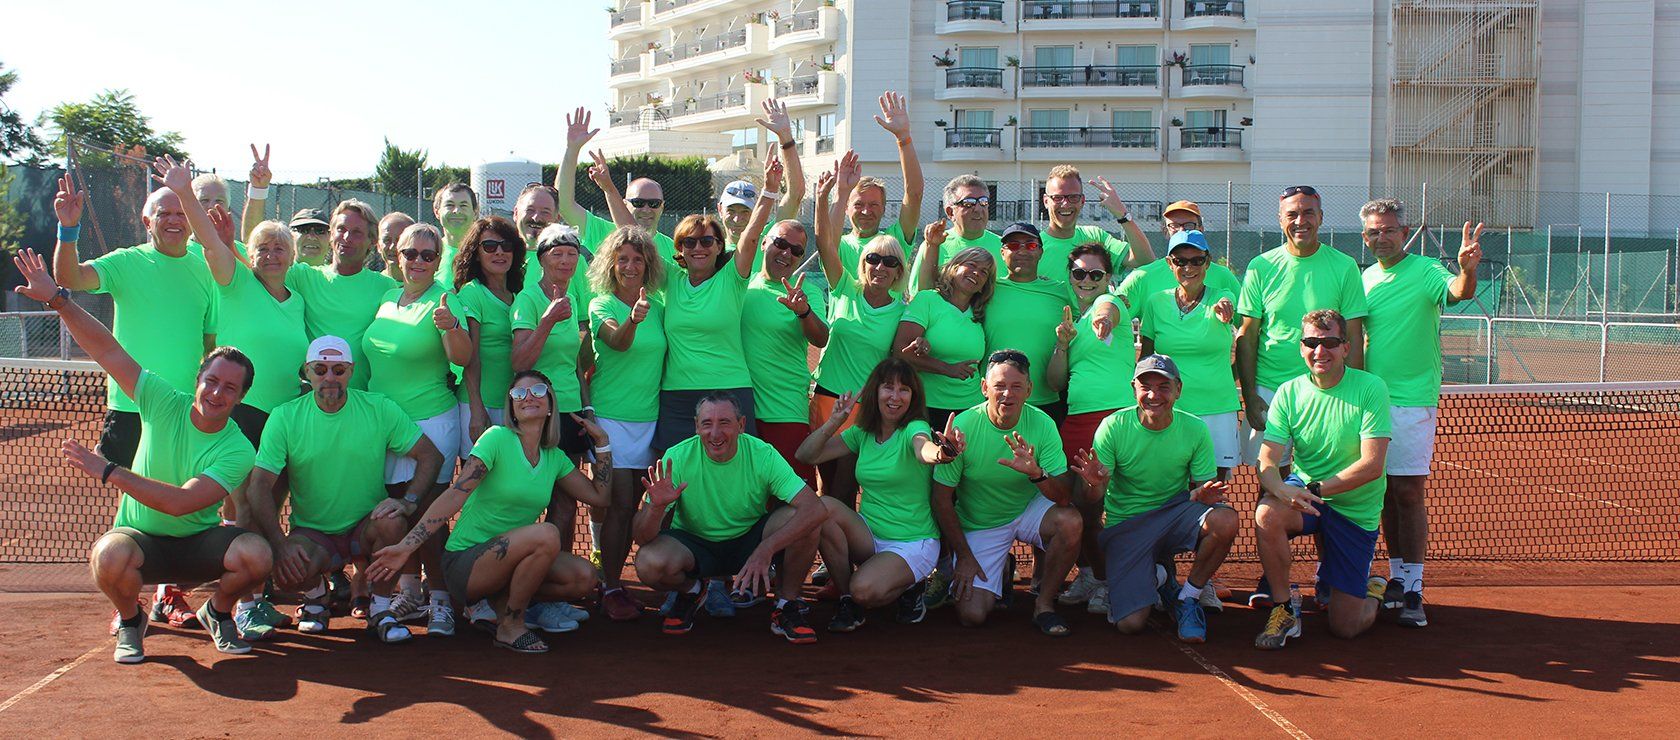 Gruppenfoto der Teilnehmer des 22nd Patricio Mastersfinale